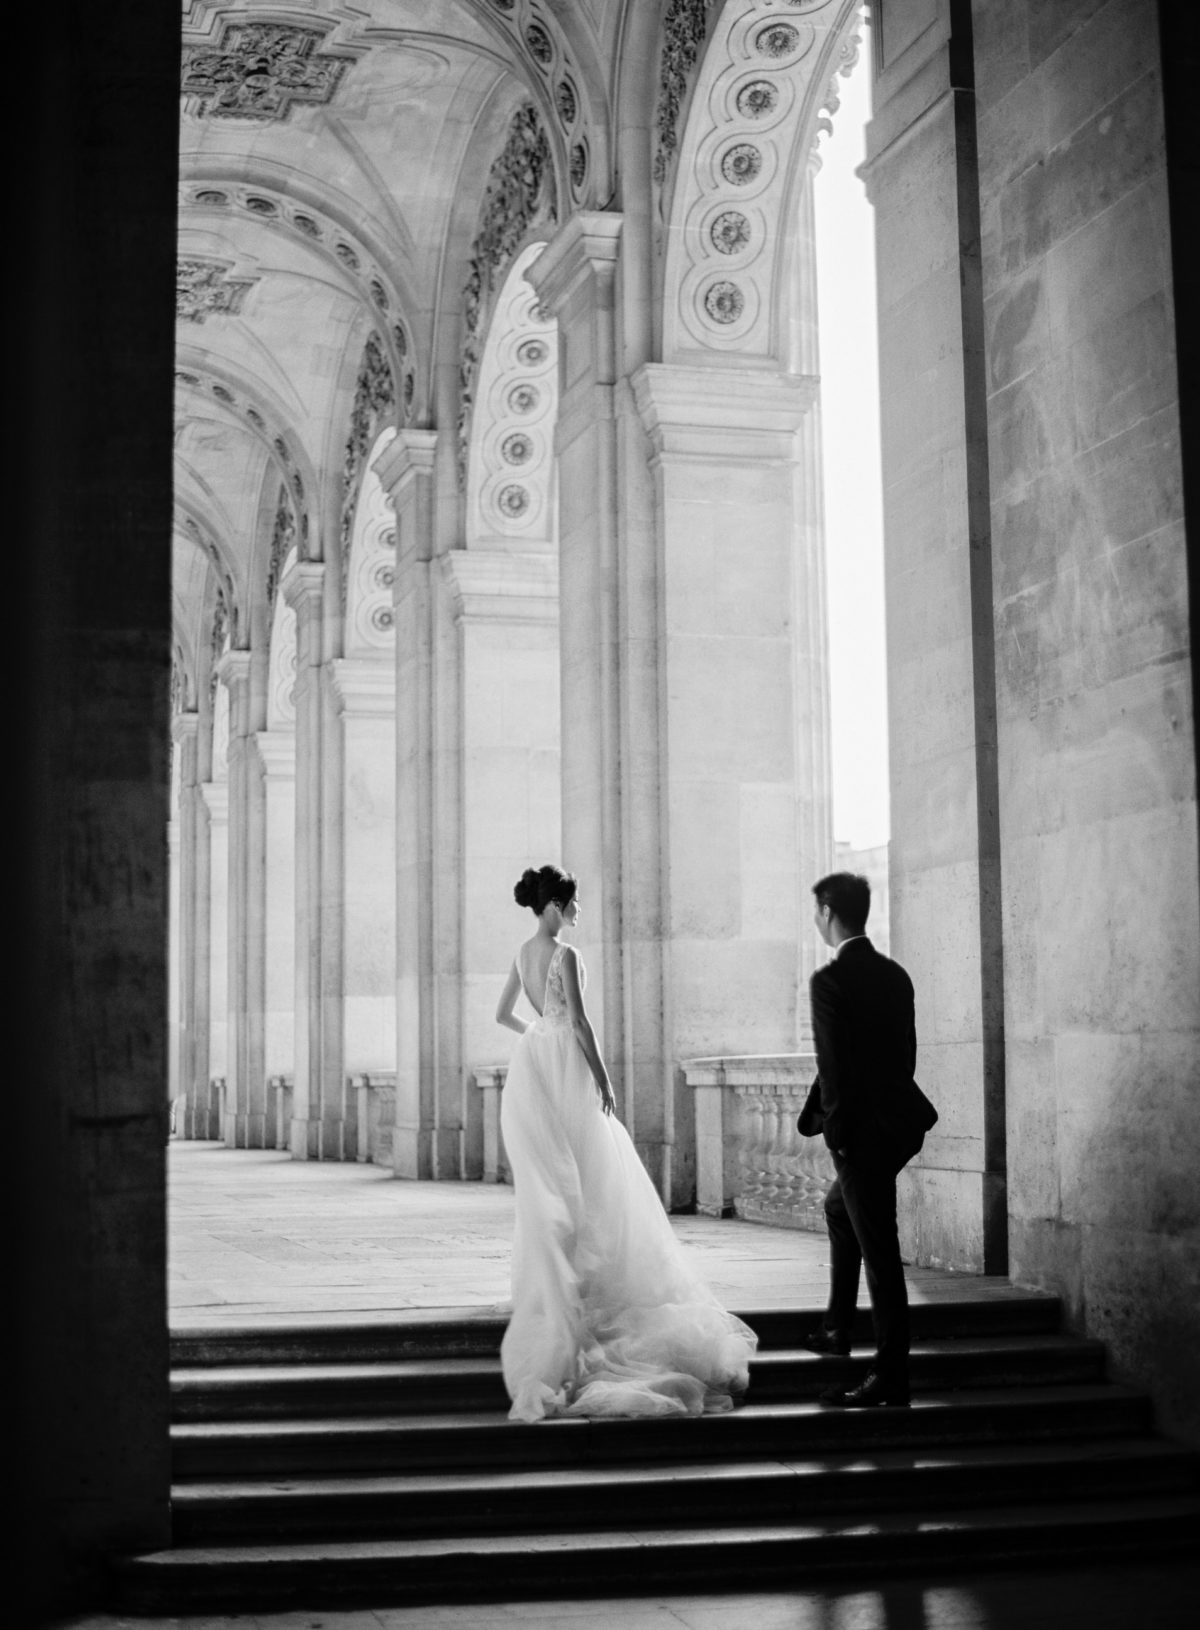 louvre pre wedding photo shoot for asian couples - Le Secret D'Audrey